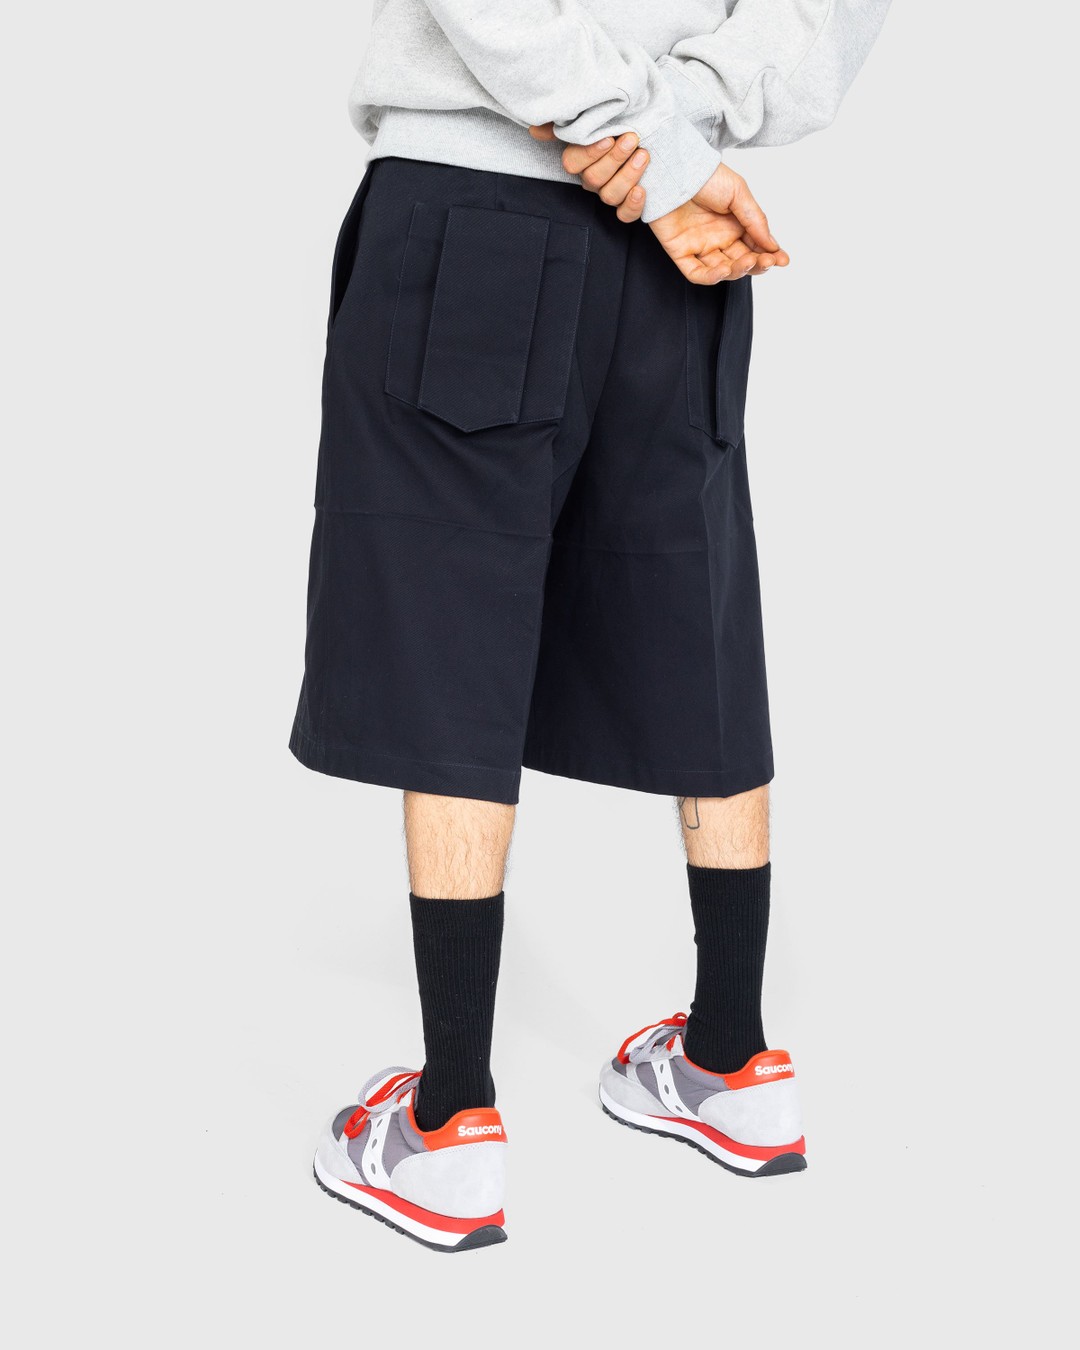 Jil Sander – Belted Shorts Navy - Shorts - Blue - Image 3